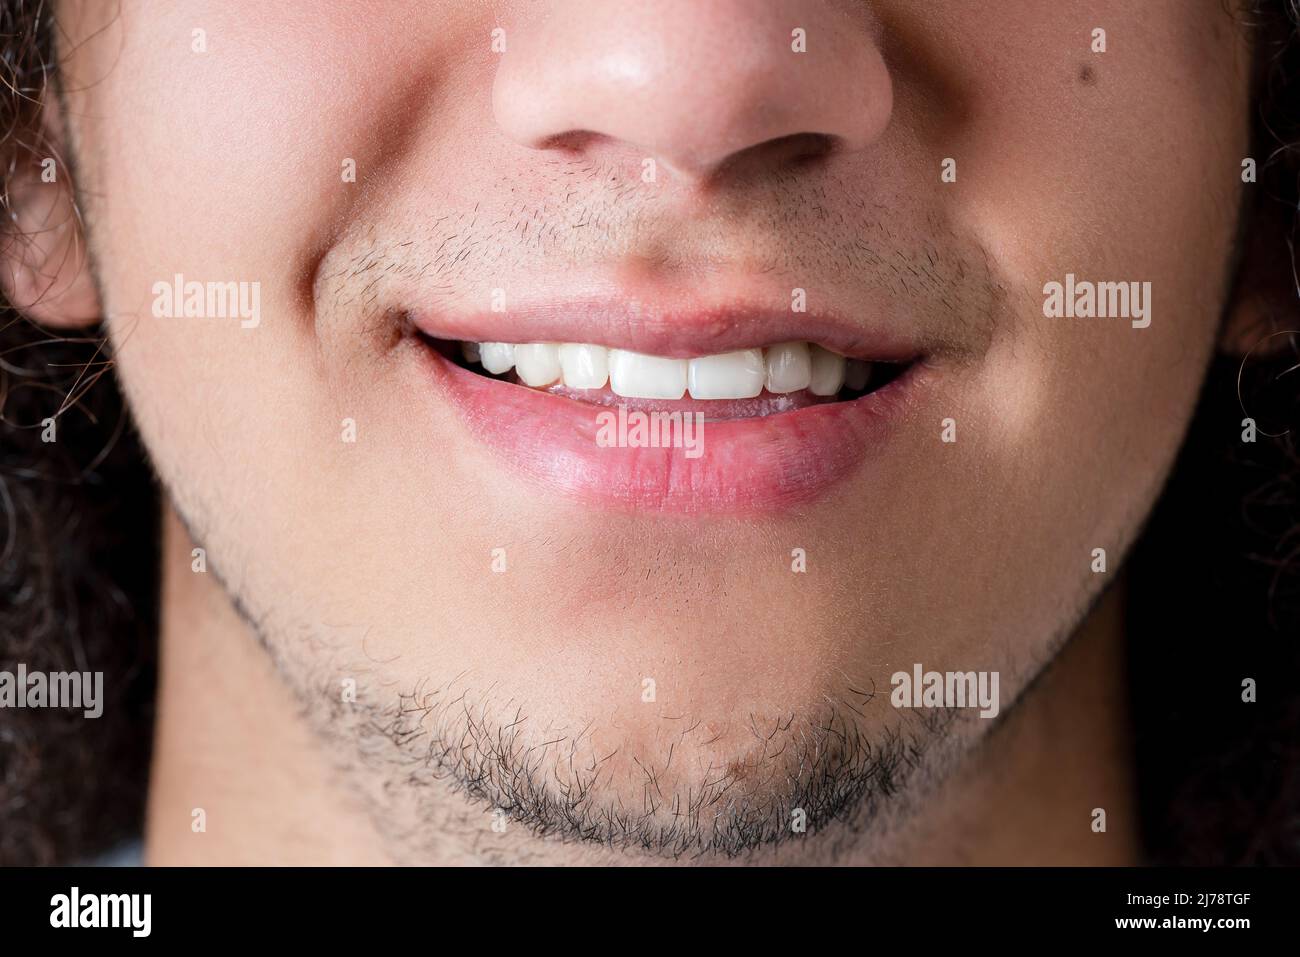 Gros plan photo d'un visage souriant et de la bouche d'un jeune homme, beau et barbu. Photo de haute qualité Banque D'Images